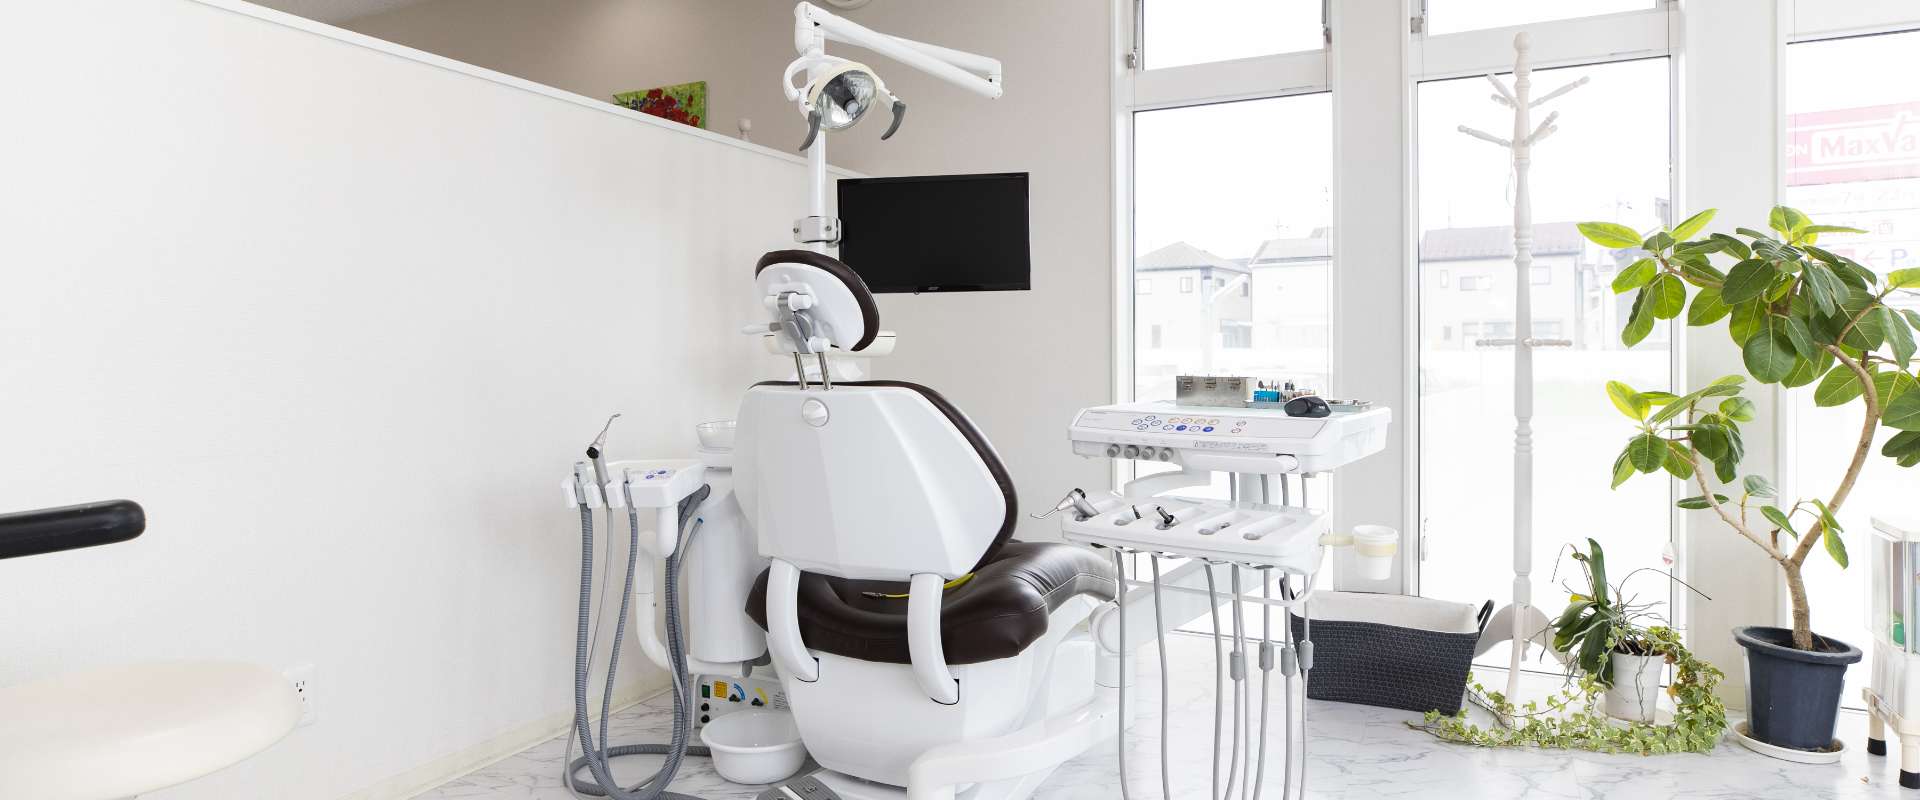 当院は厚生労働省が定めた歯科外来診療環境体制の認定施設です